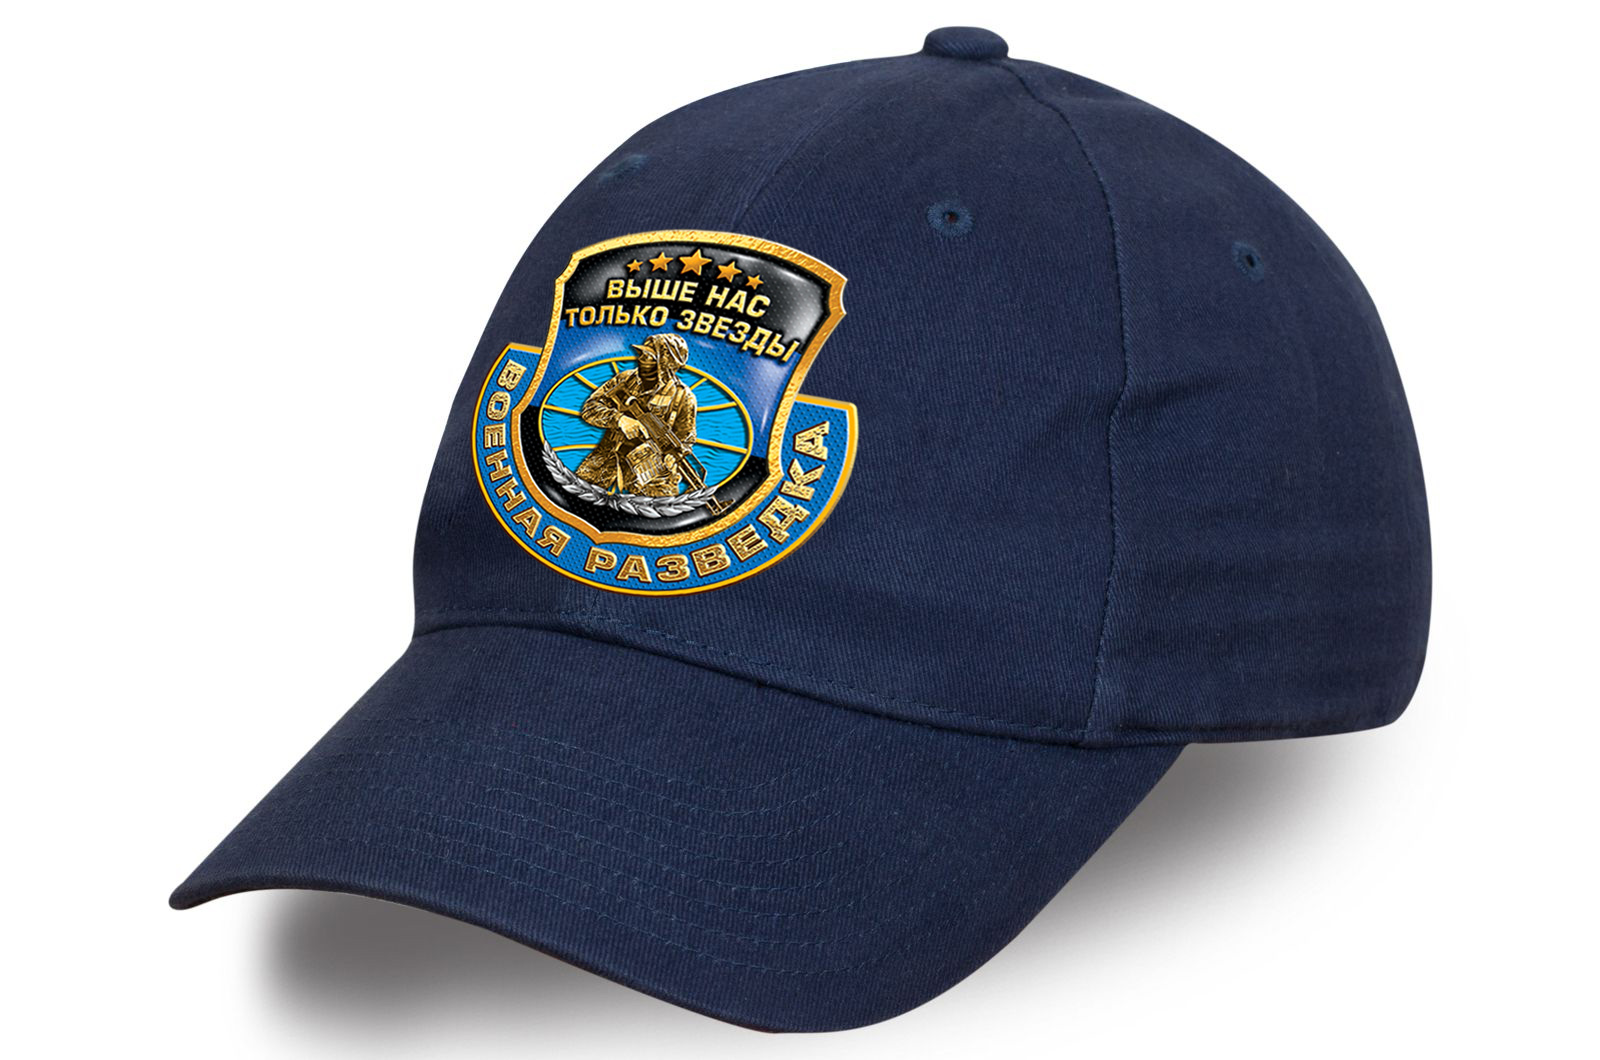 Удобная кепка "Военная разведка" из хлопка - достойное сочетание стиля и комфорта №тр808